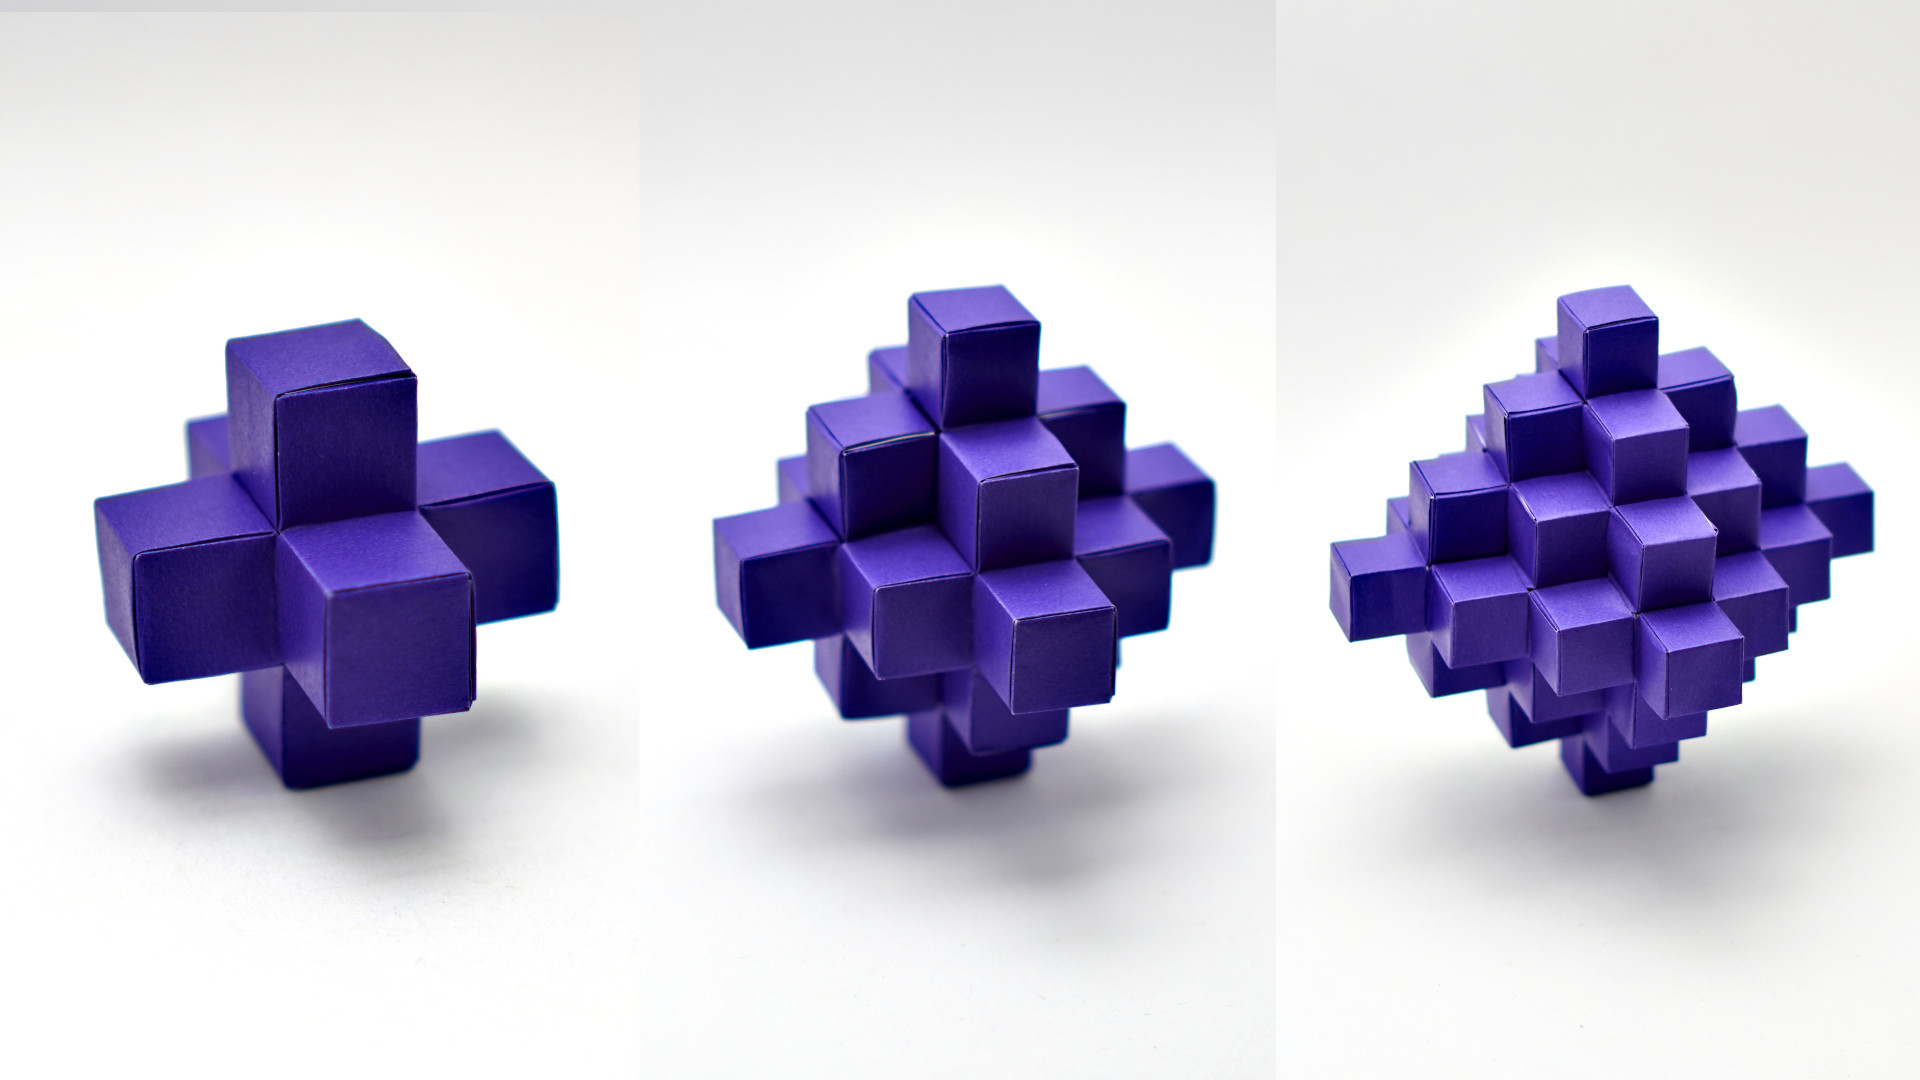 Origami Pixelated Octahedron